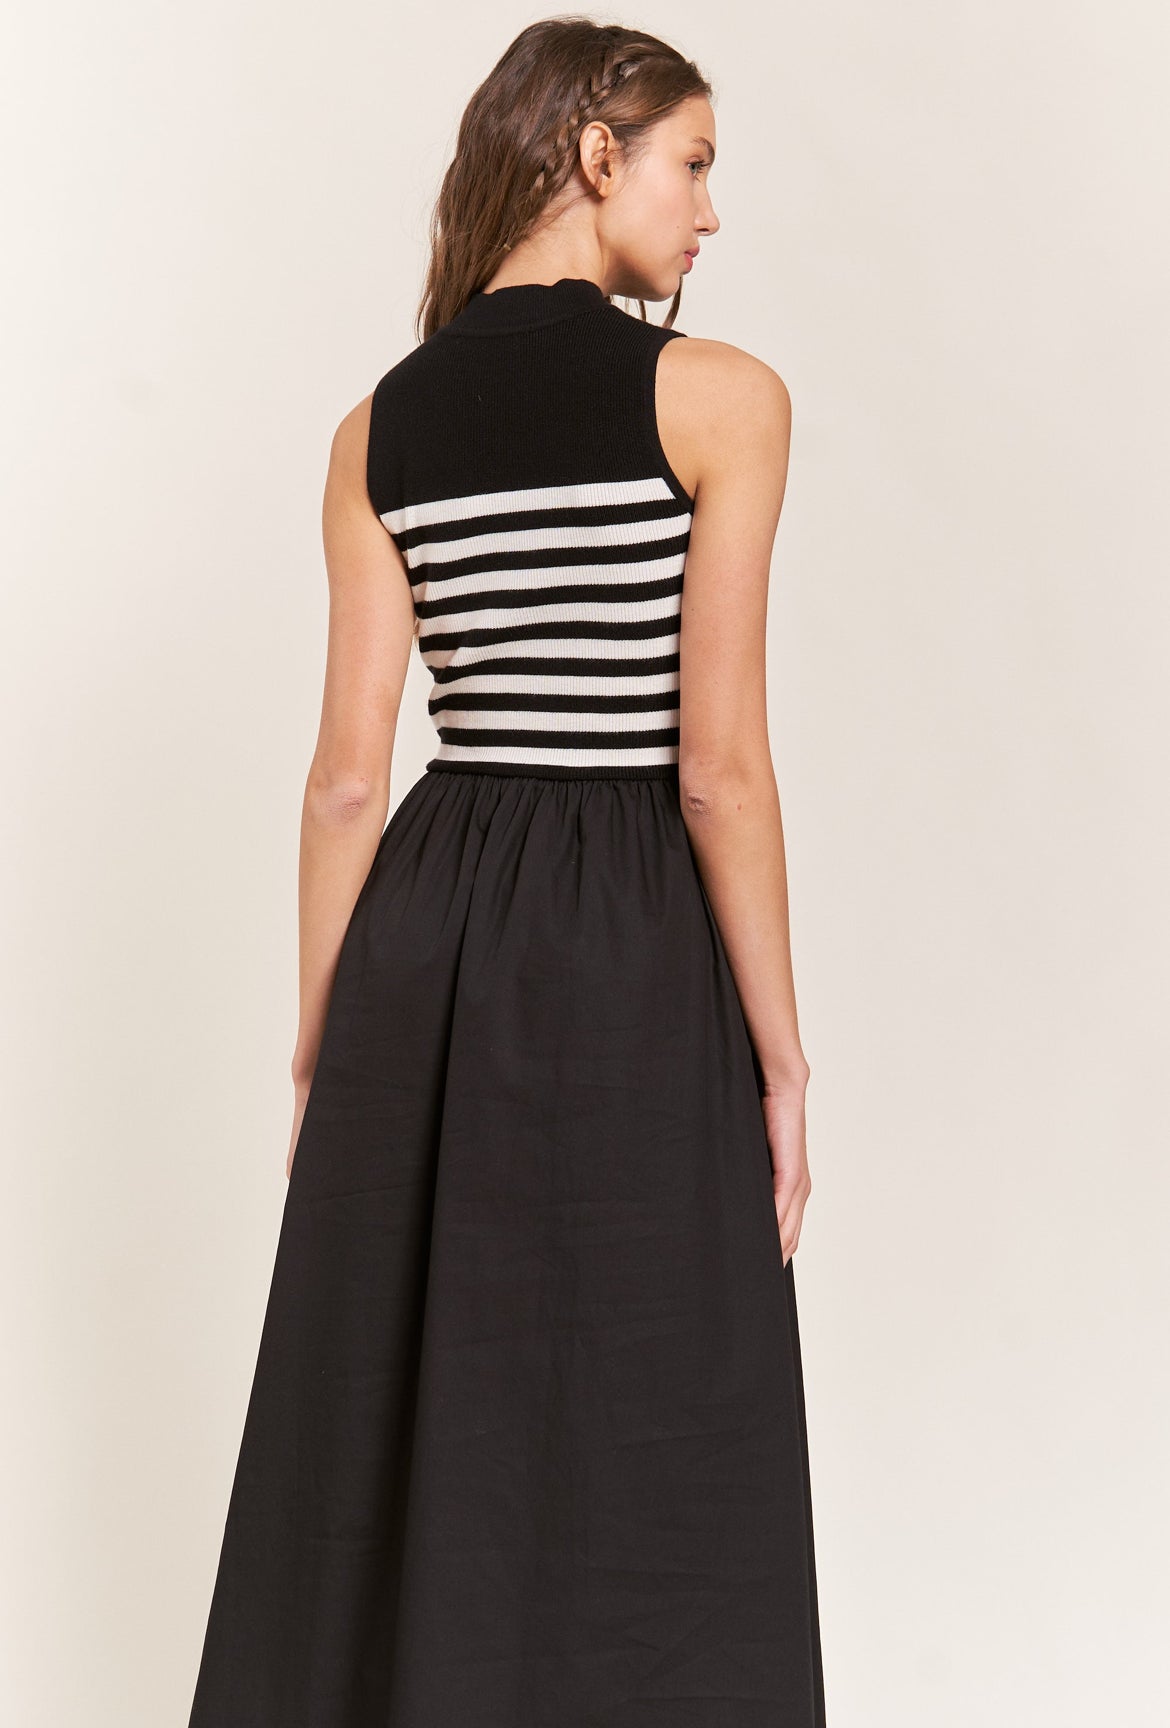 Striped Knit Dress in Black